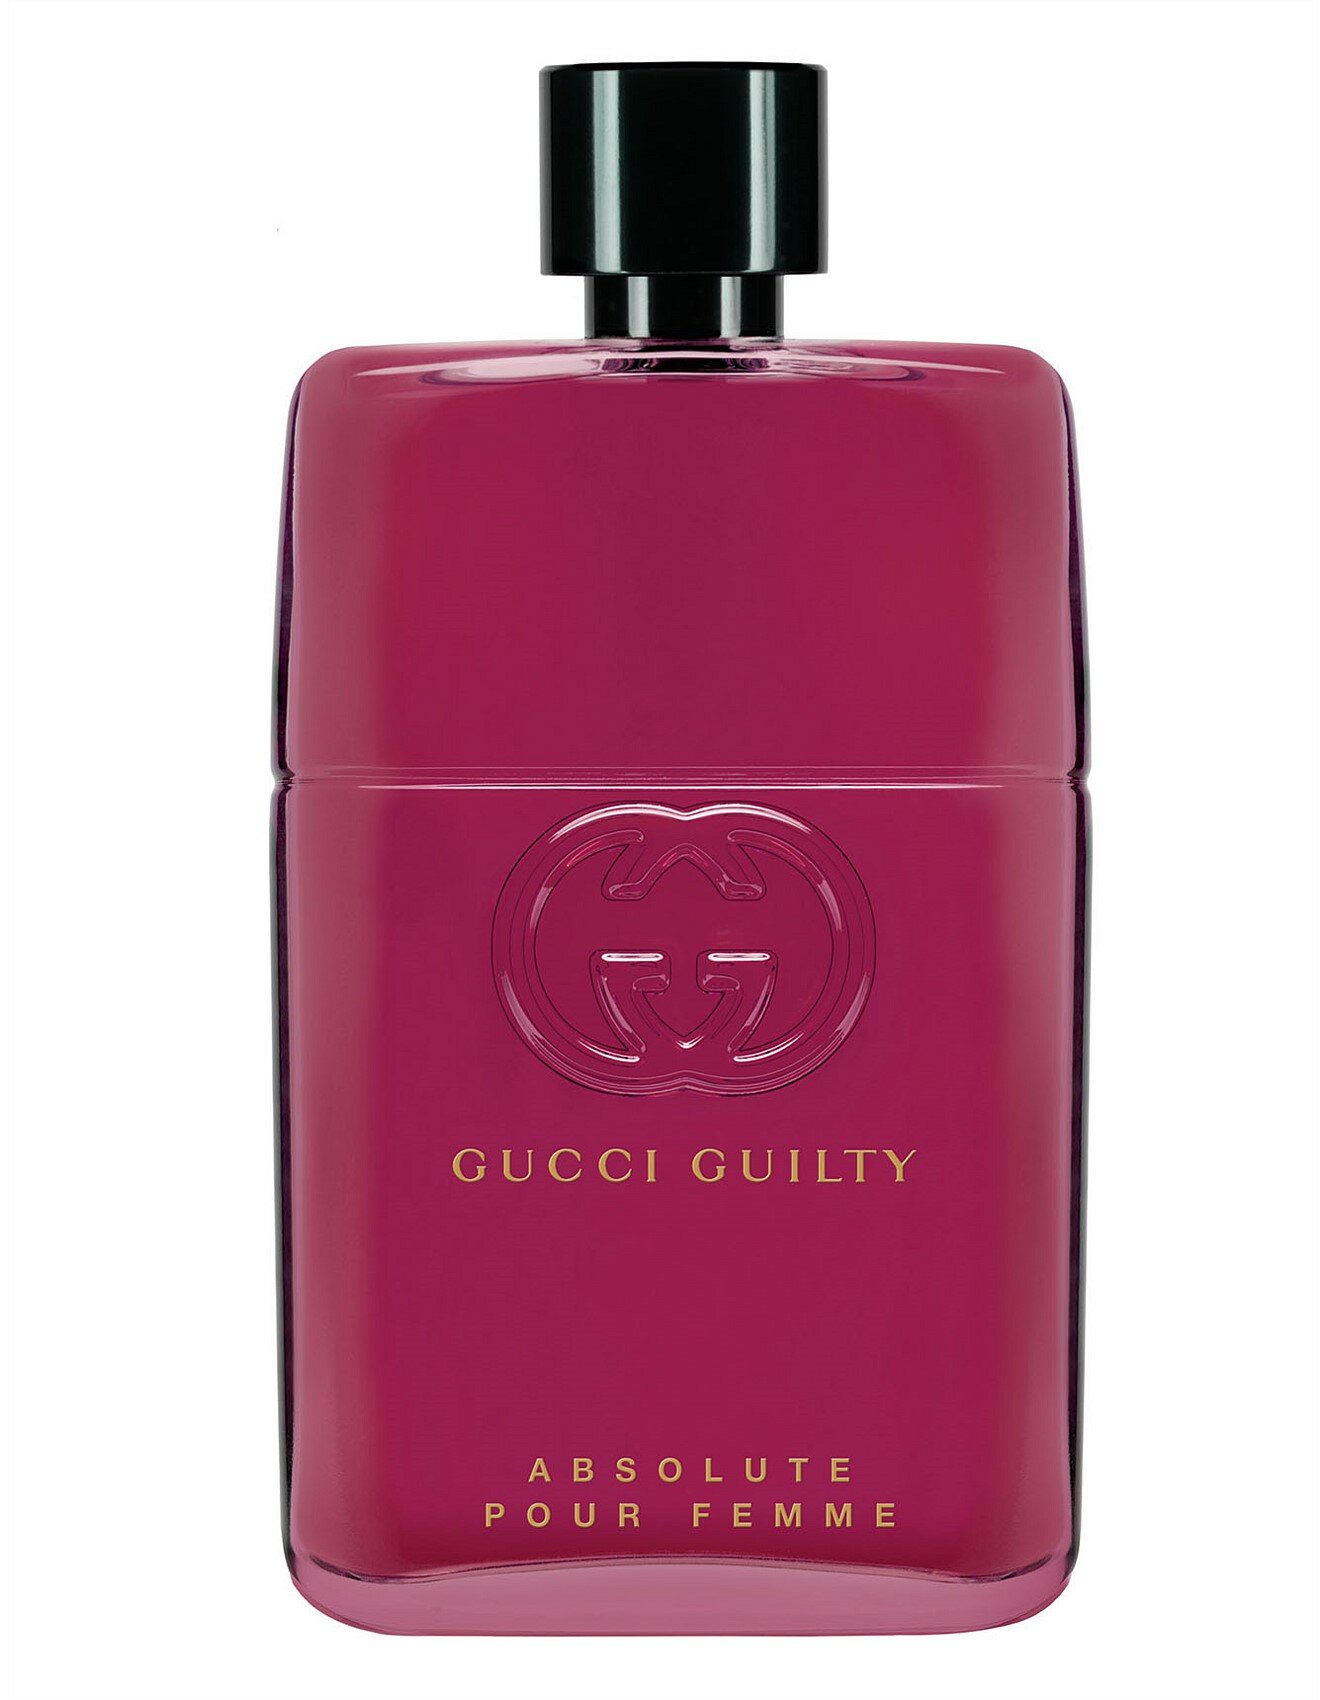 Gucci Guilty Absolute Pour Femme парфюмированная вода 50мл